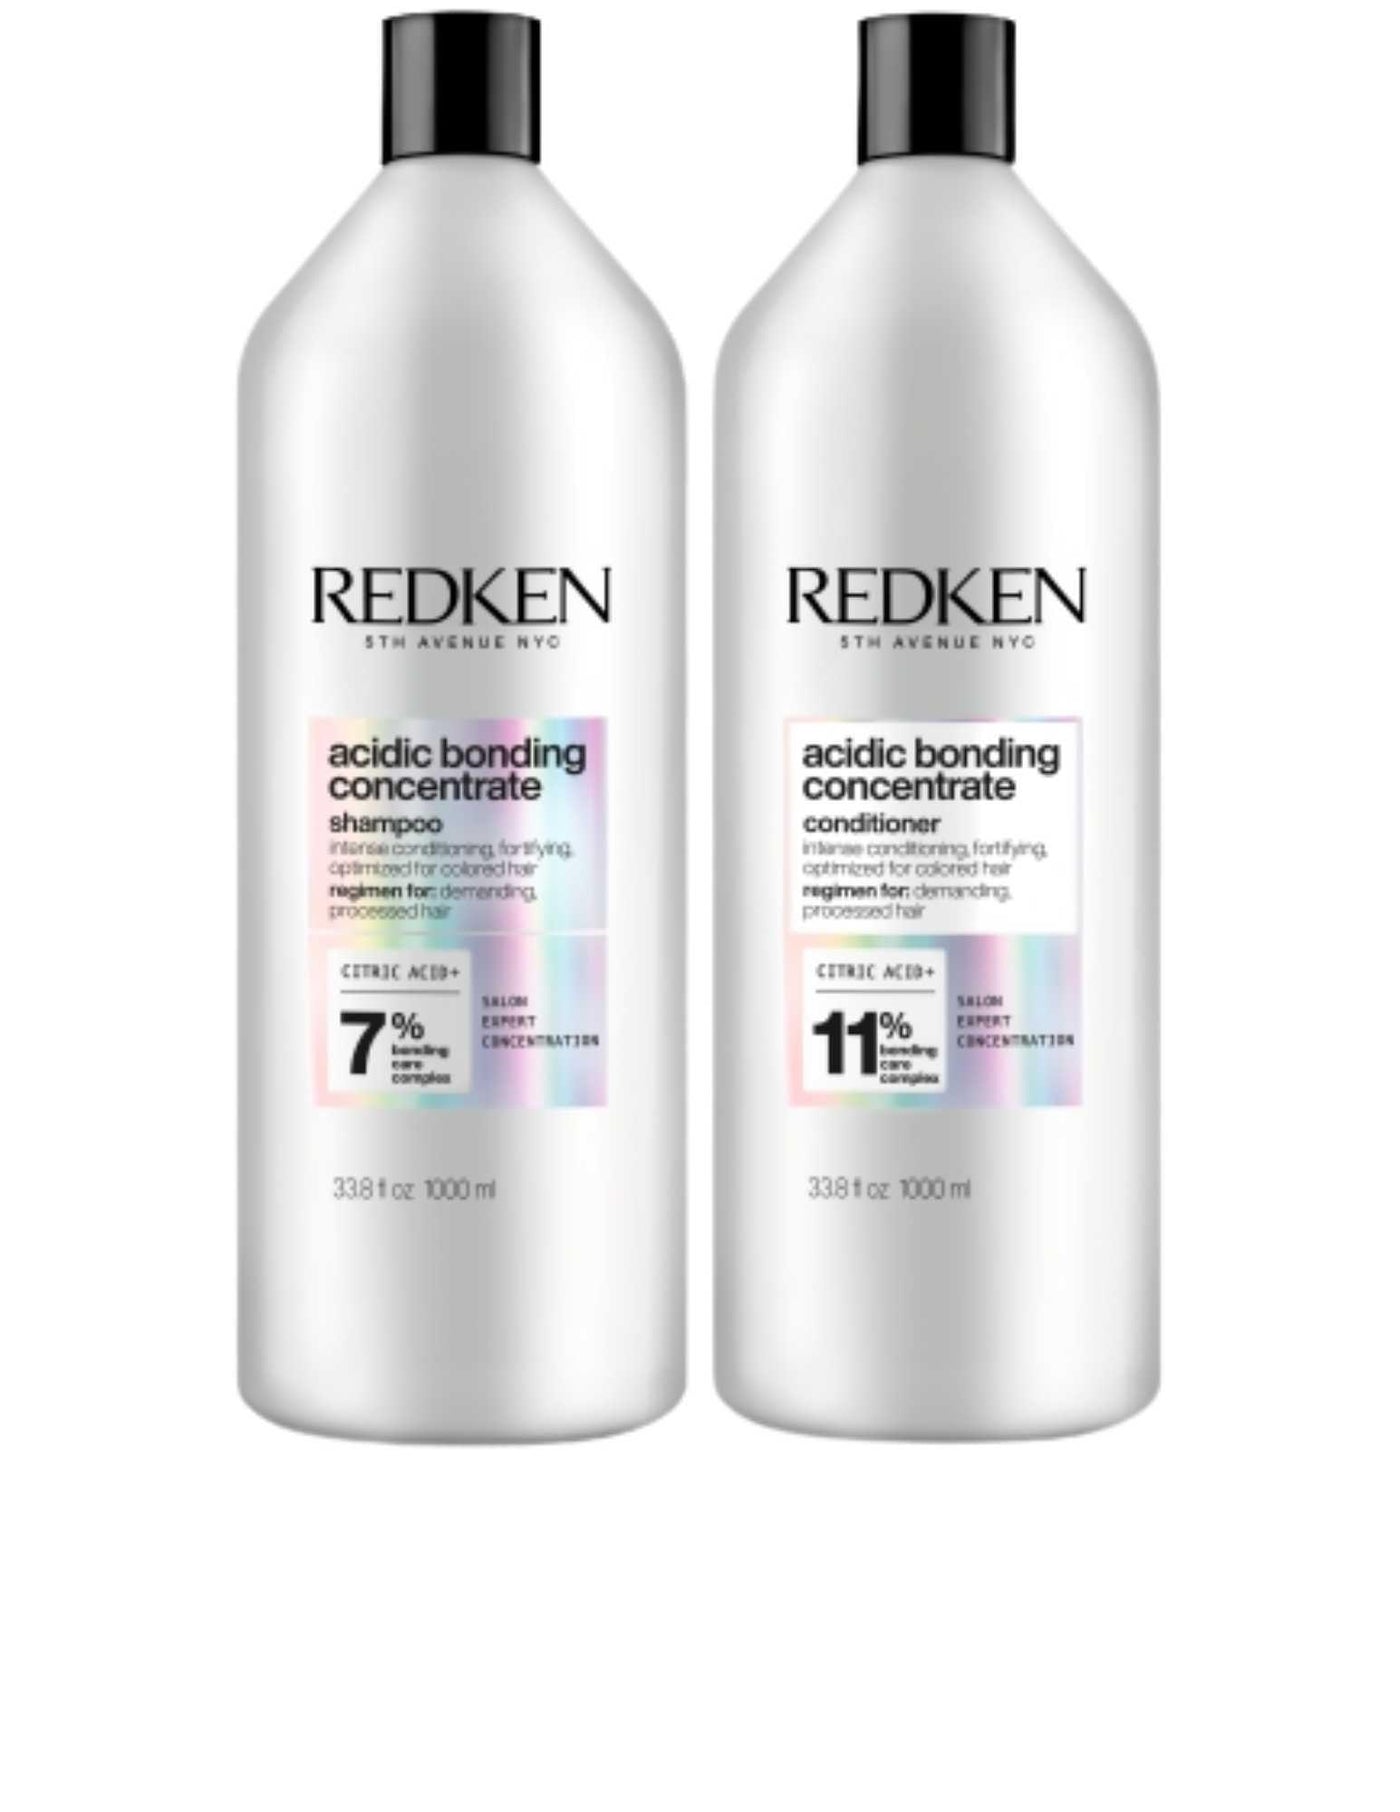 Duo Liters - Acidic Bonding Concentrate Redken Boutique Deauville